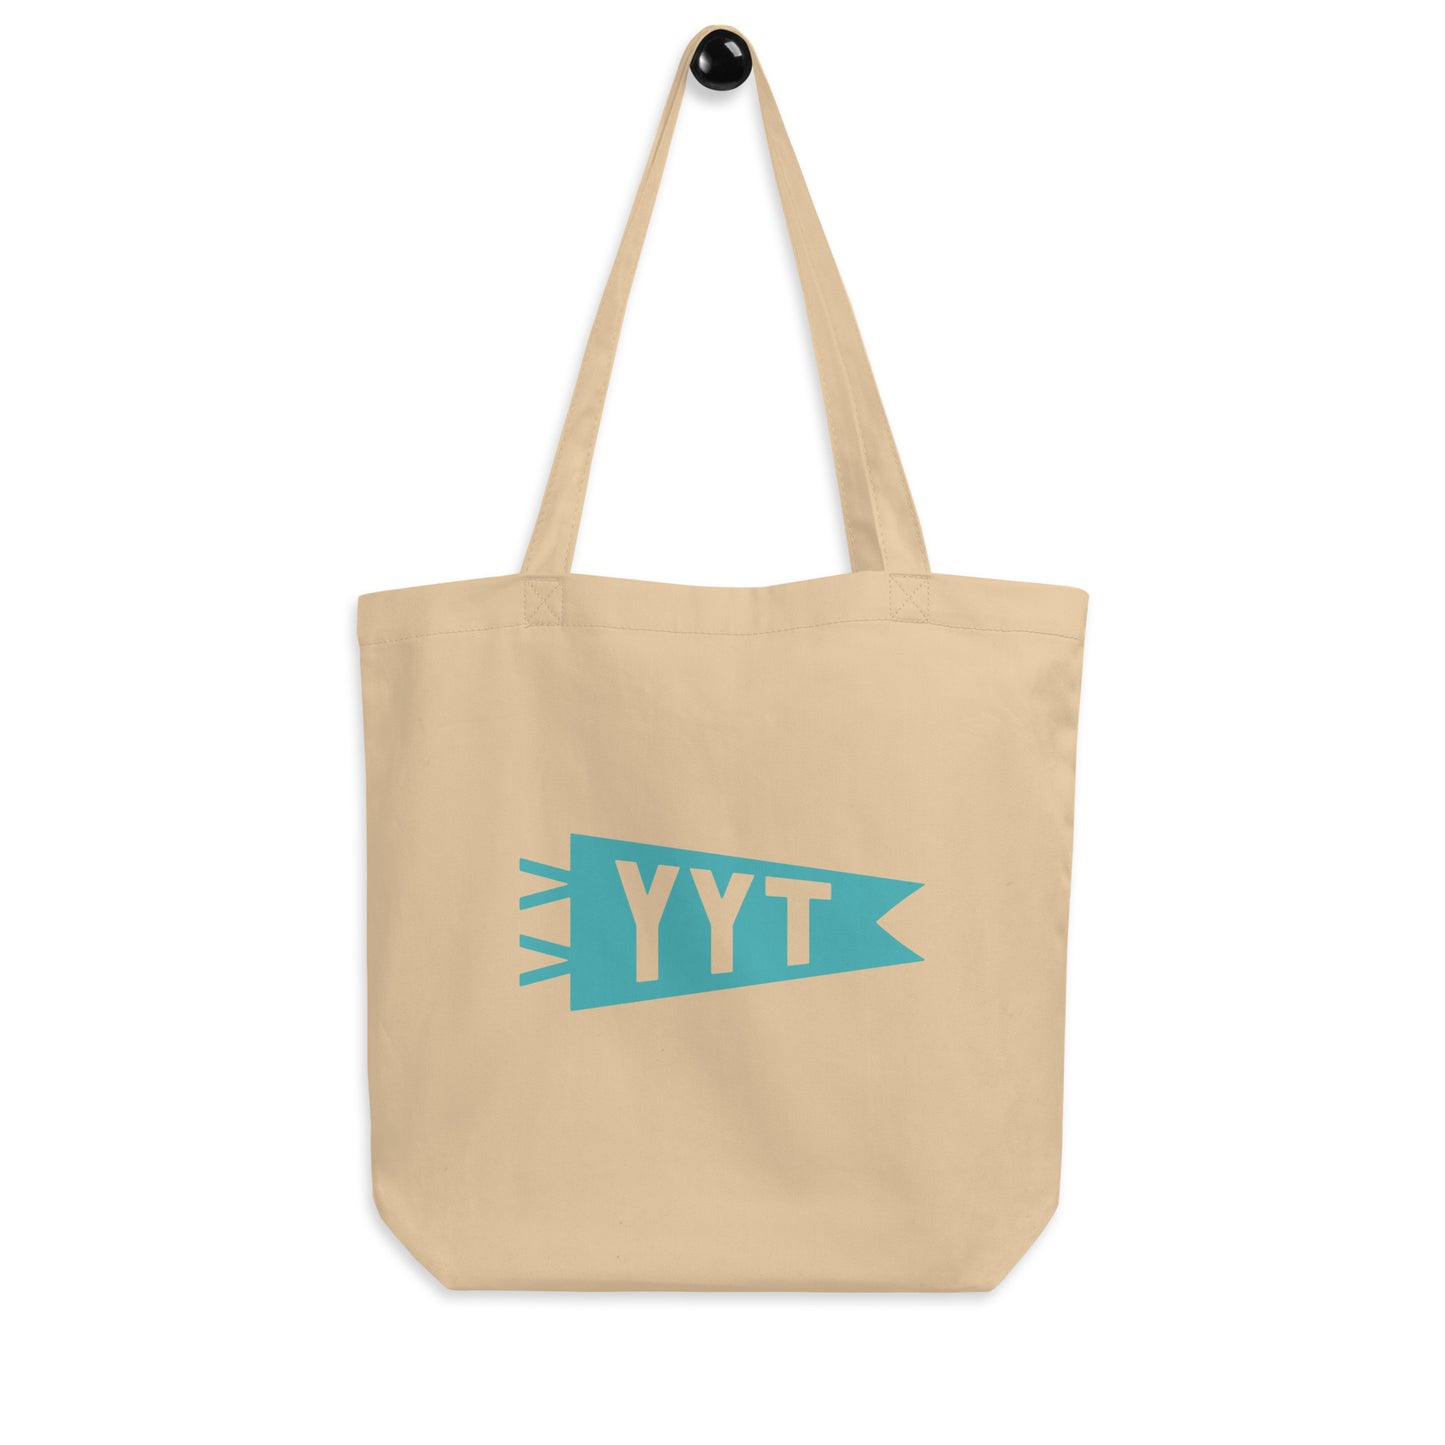 Cool Travel Gift Organic Tote Bag - Viking Blue • YYT St. John's • YHM Designs - Image 04